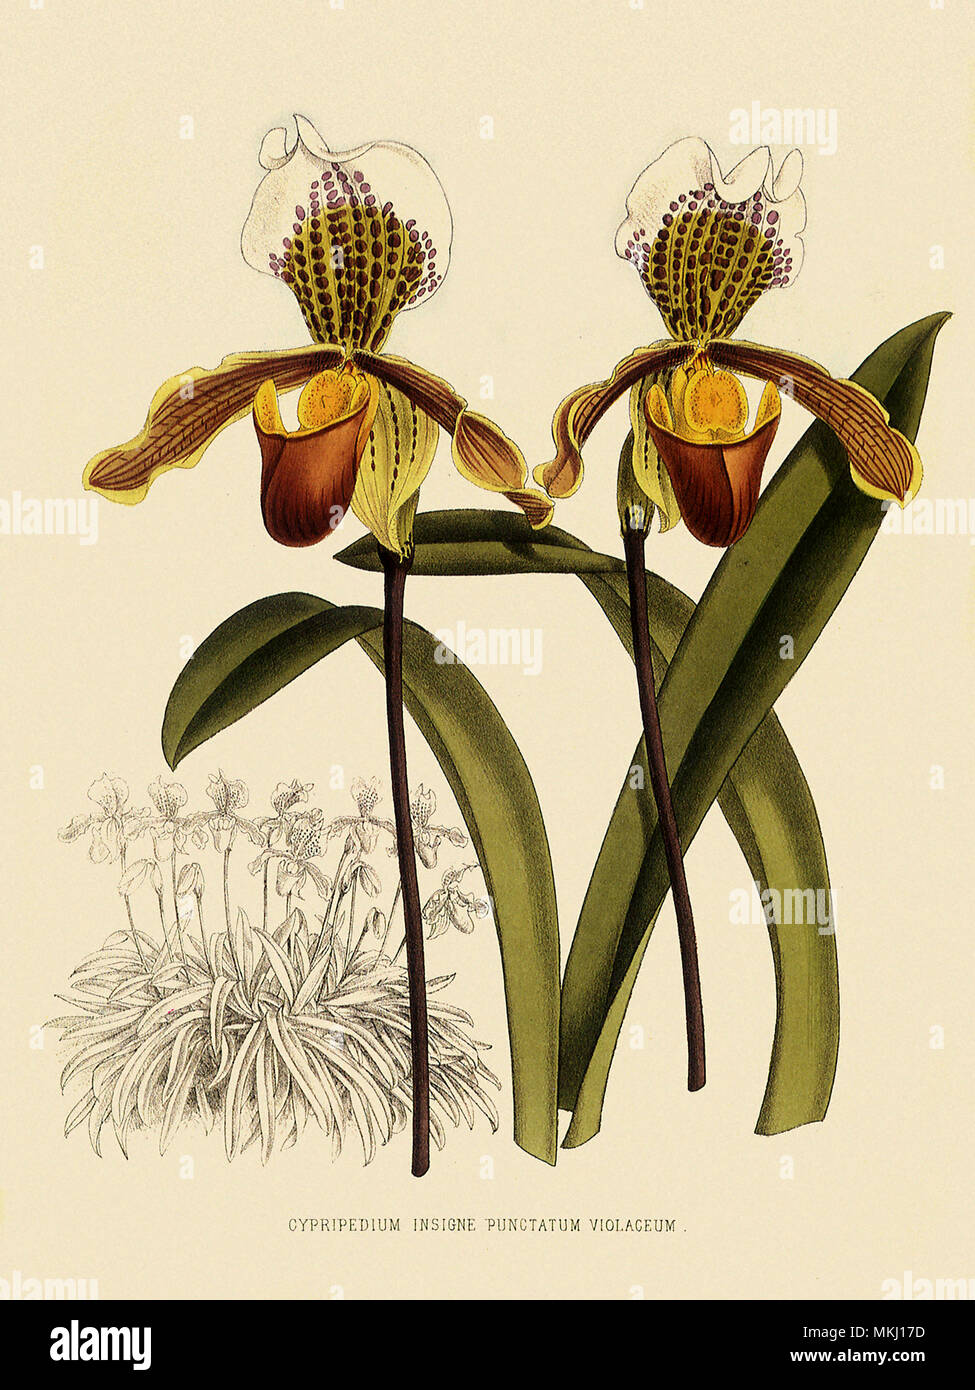 Cypripedium Insigne Punctatum Violaceum Stock Photo